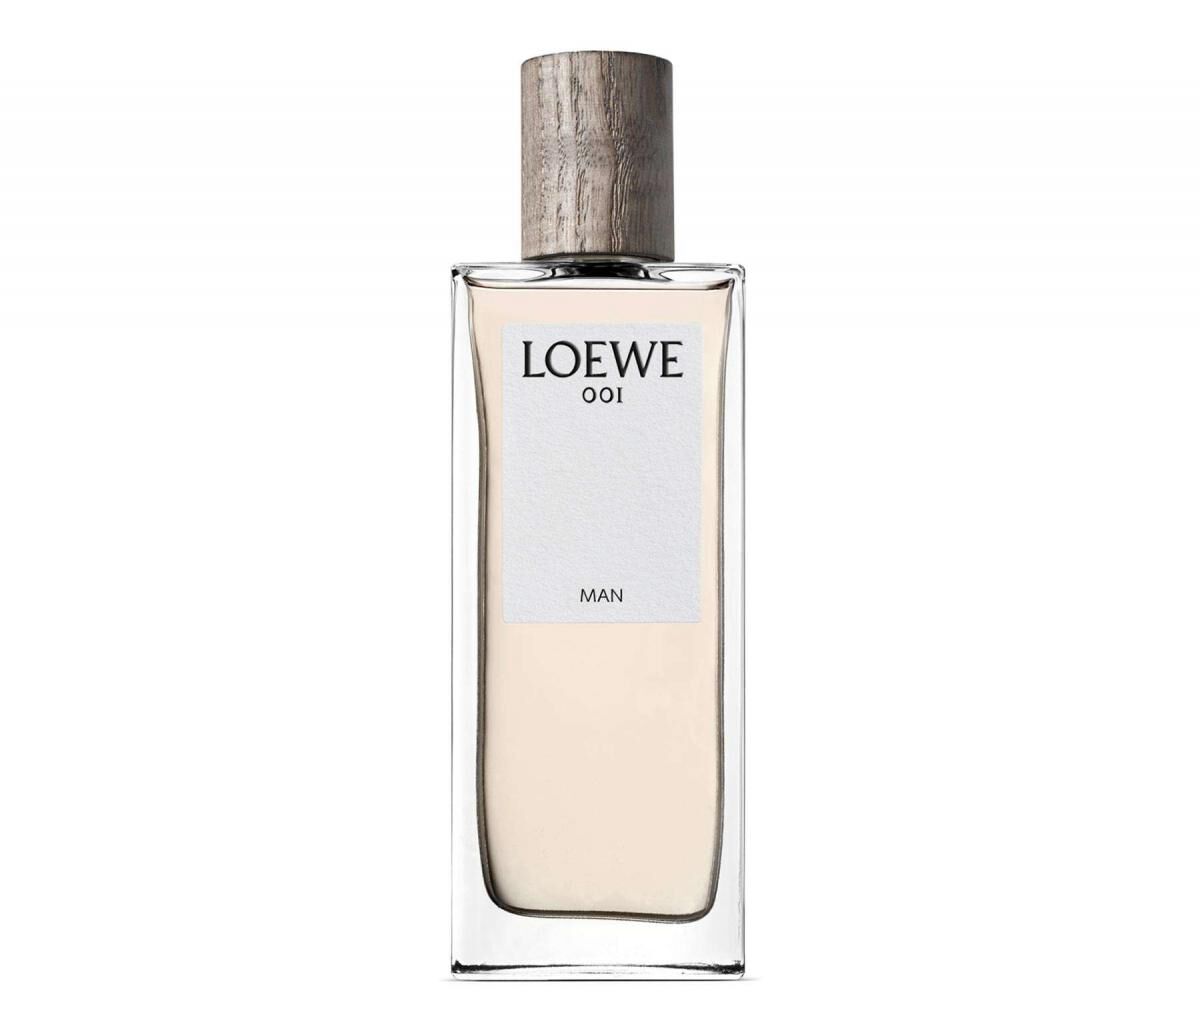 Buy online LOEWE 001 Man Eau de Parfum 